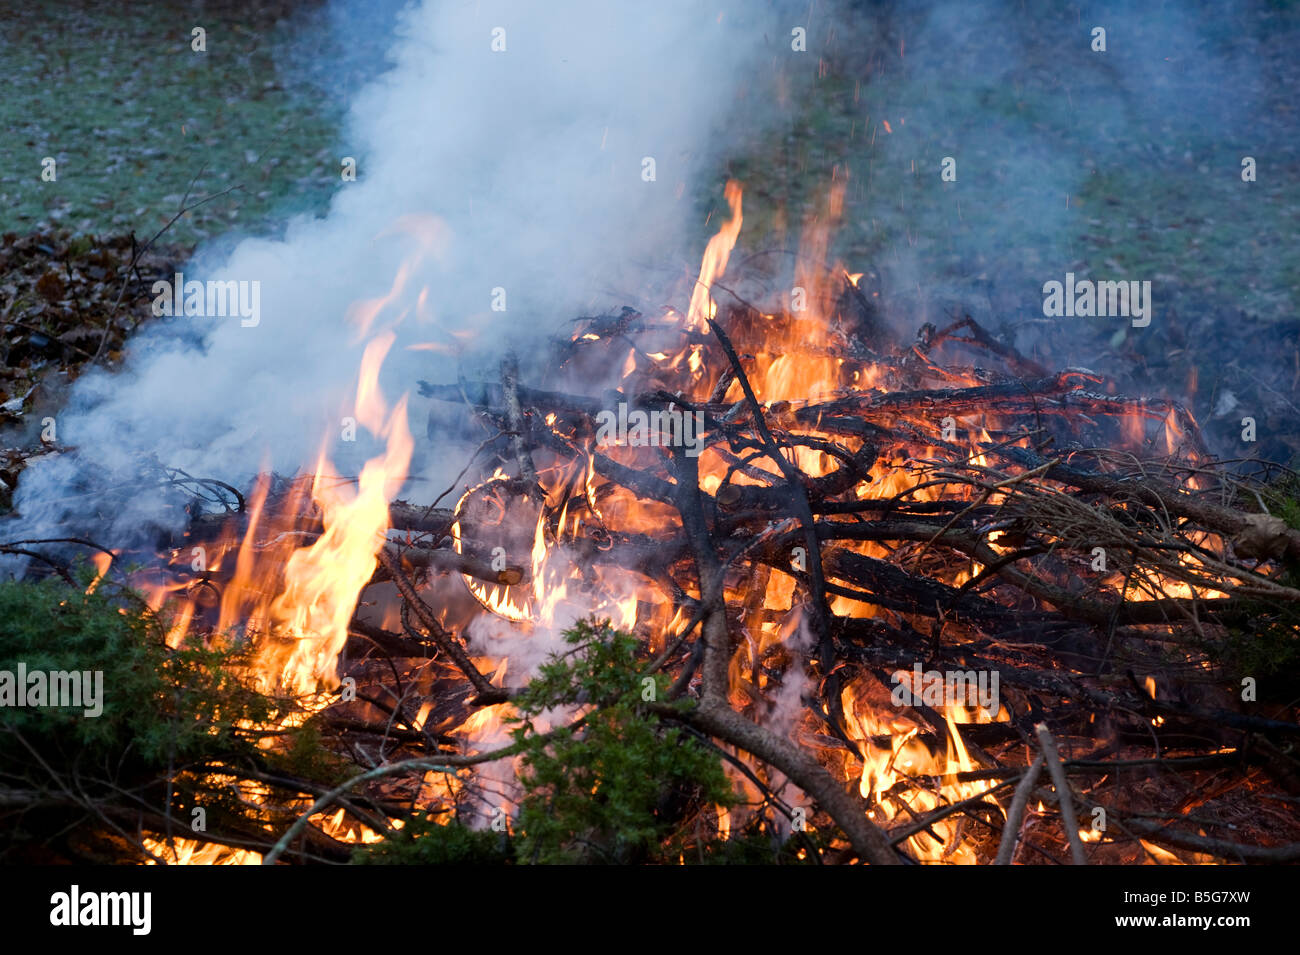 Fire in a garden Stock Photo